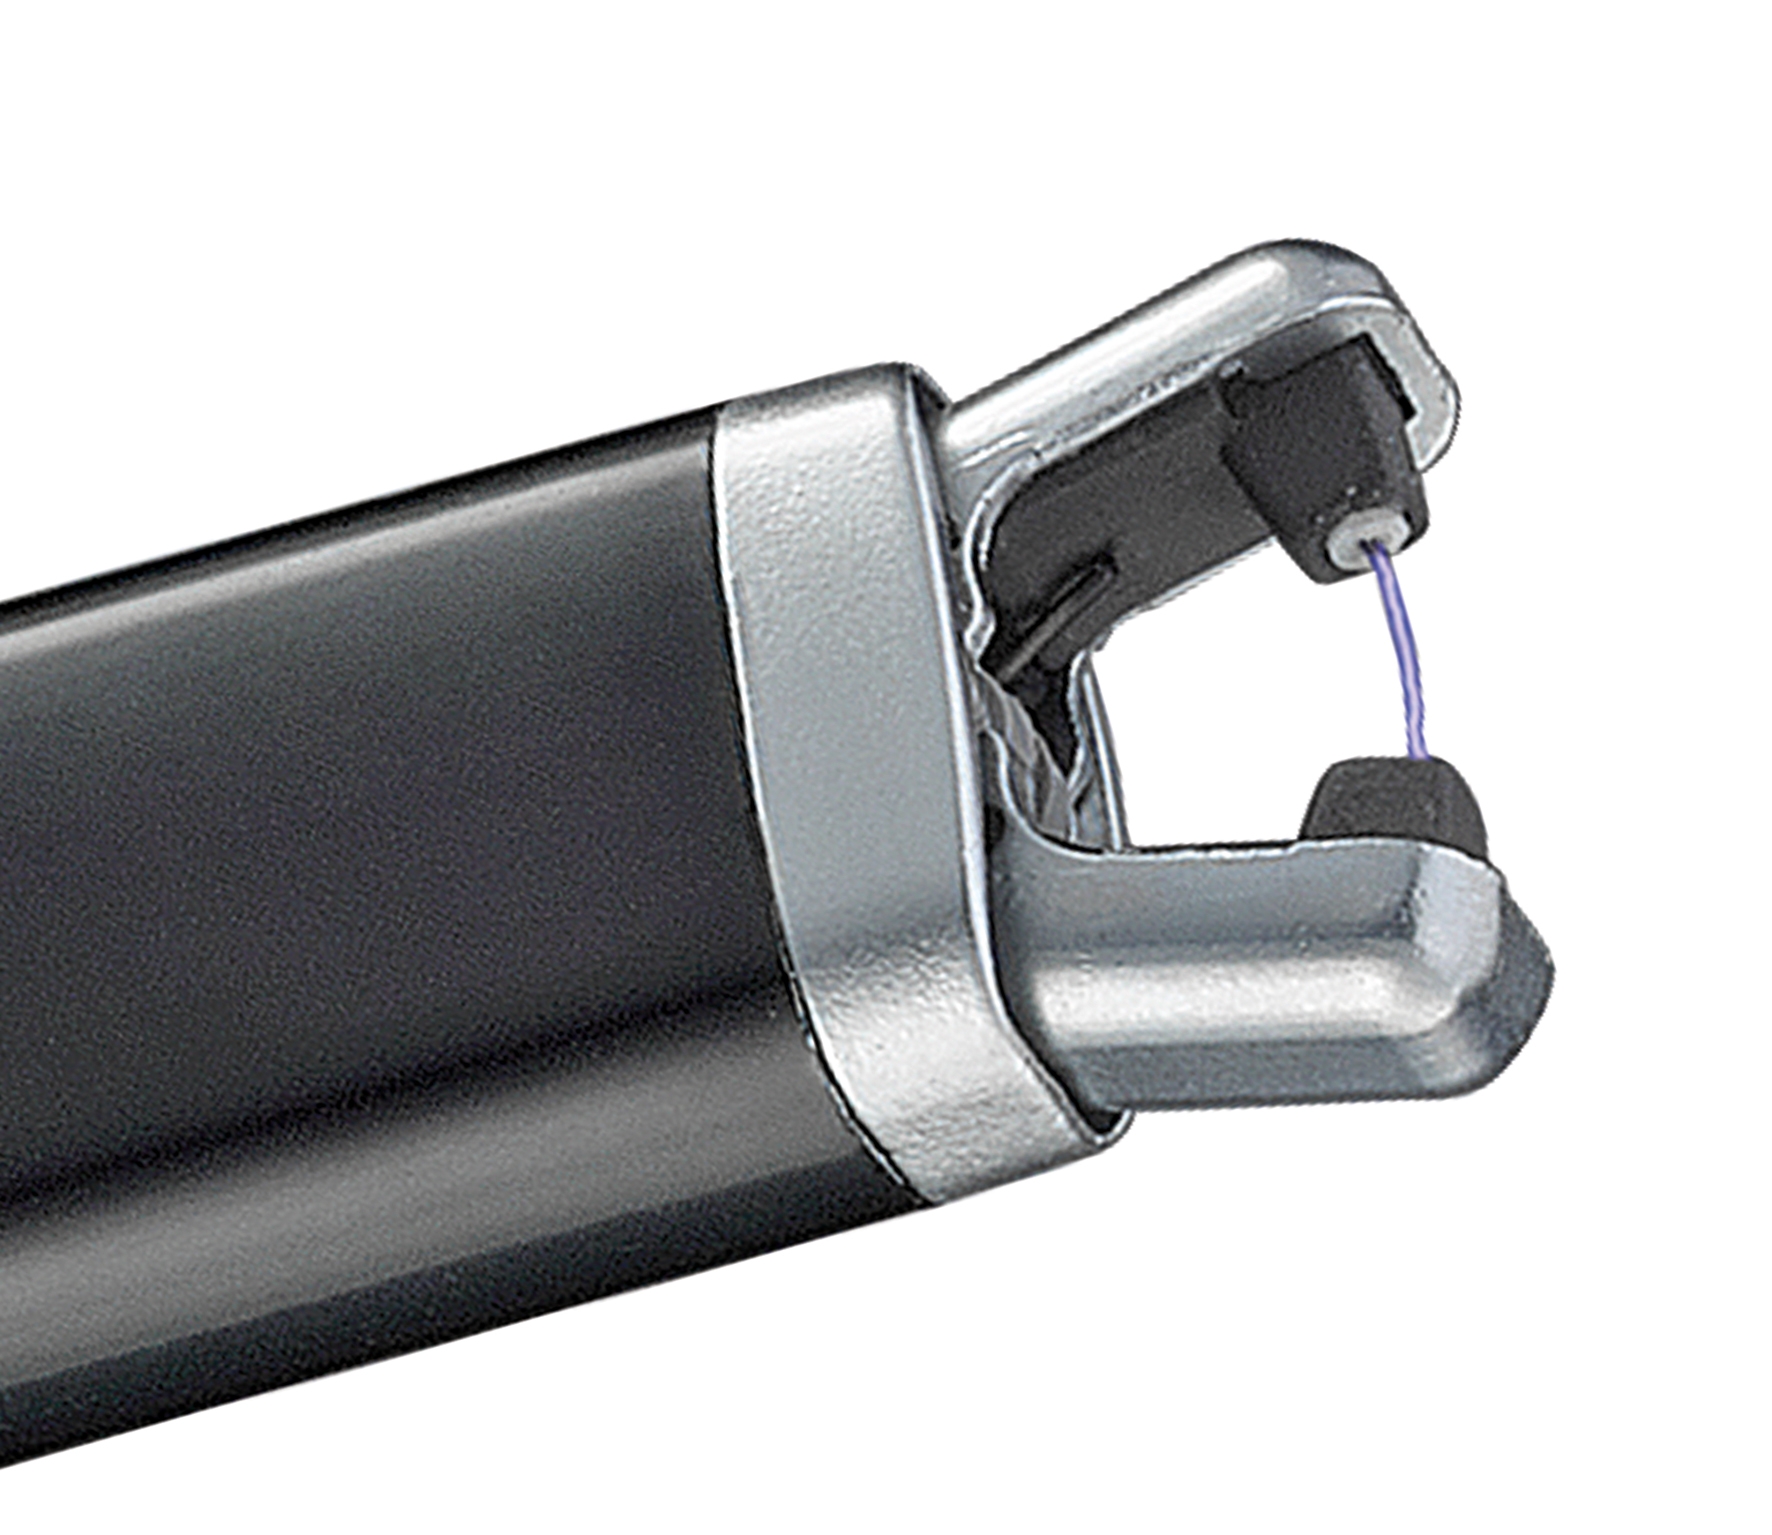 Lichtbogenfeuerzeug ARC, elektrisch 20cm lang sturmsicher  + aufladbar mit USB-Kabel, sichere Handhabung